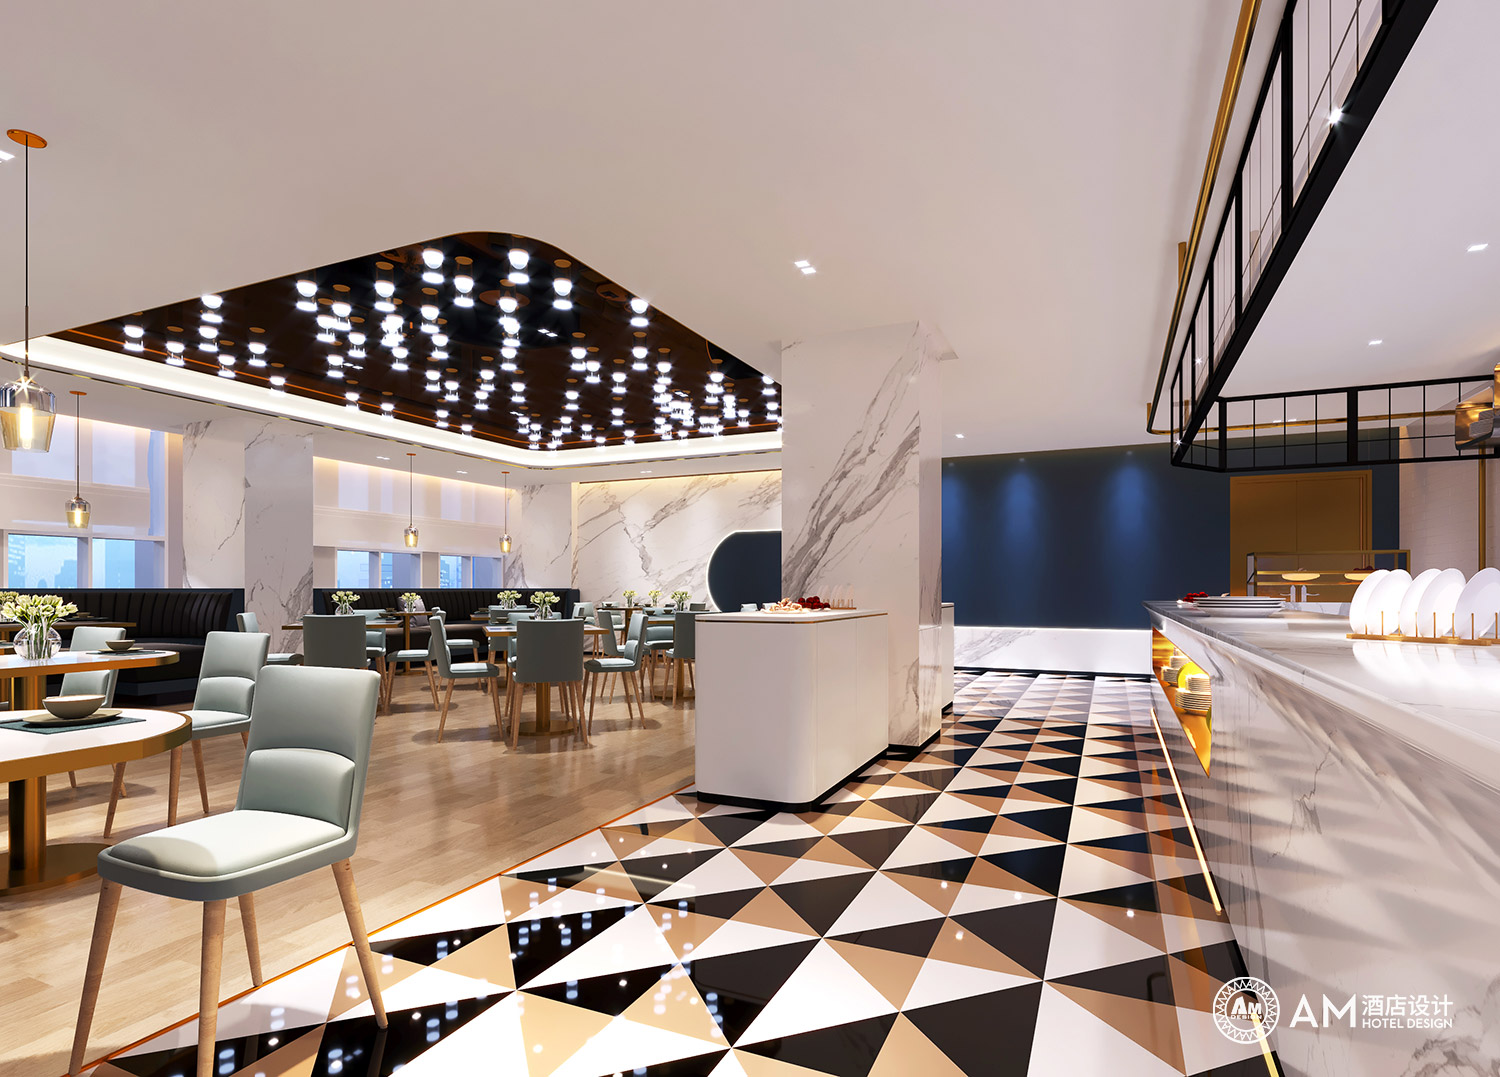 AM DESIGN | Yueli Hotel Design Restaurant Design